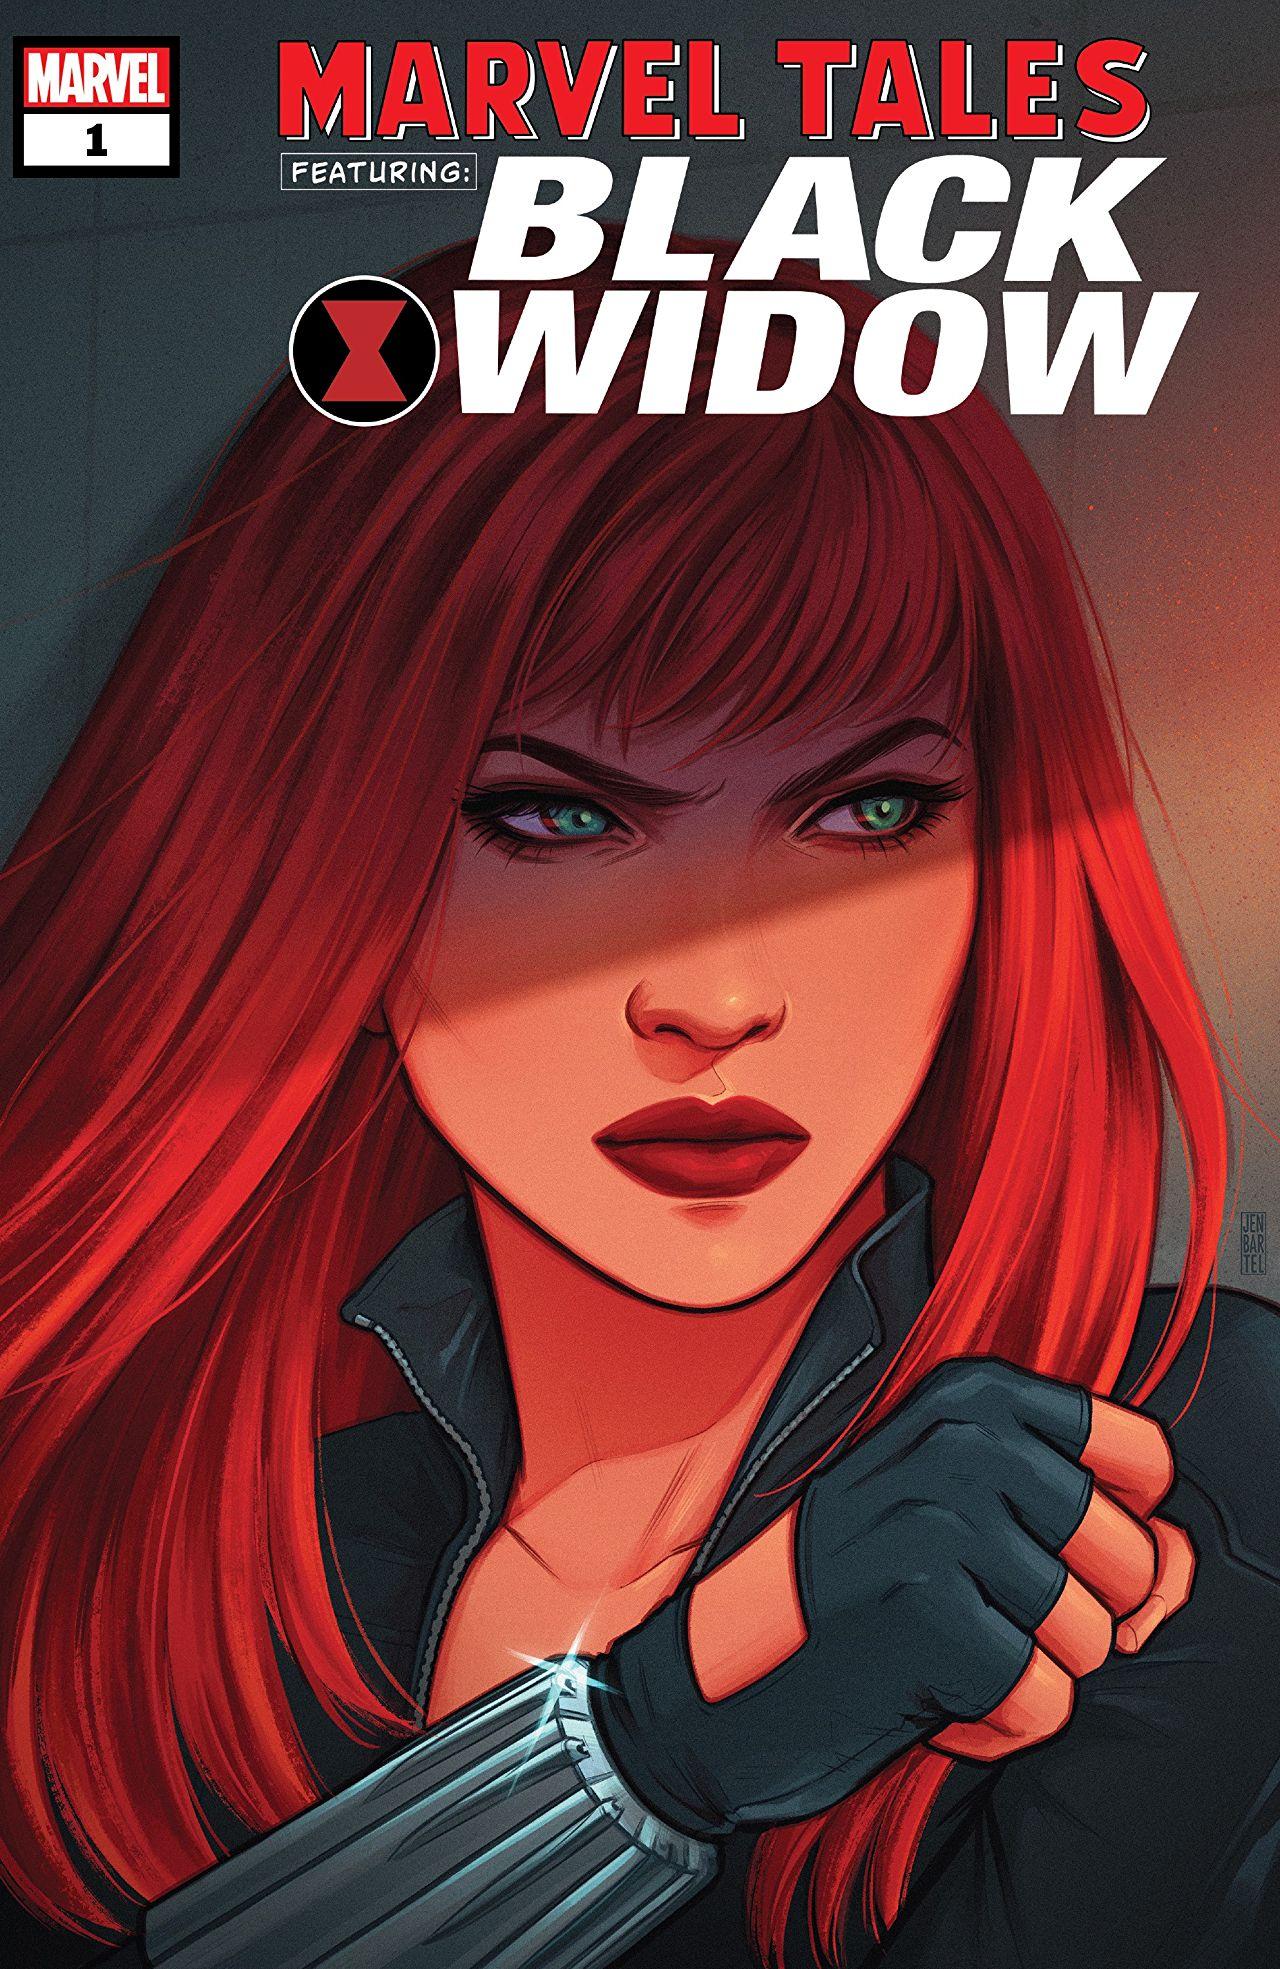 Marvel Tales: Black Widow Vol. 1 #1